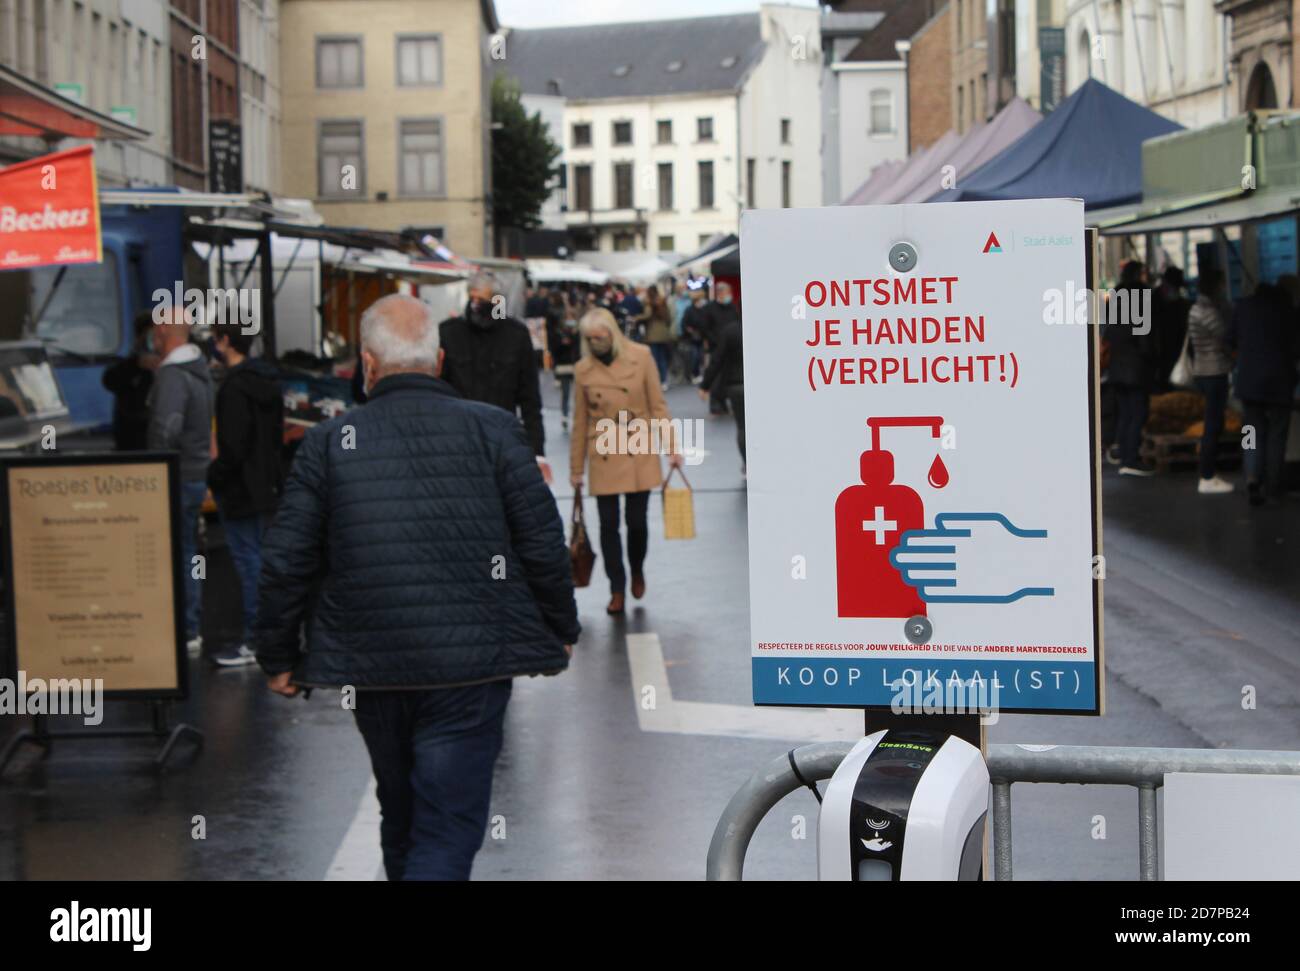 AALST, BELGIO 24 OTTOBRE 2020: Cartelli "disinfezione manuale delle mani" all'ingresso del mercato locale settimanale per le strade di Aalst, Fiandre Orientali Foto Stock